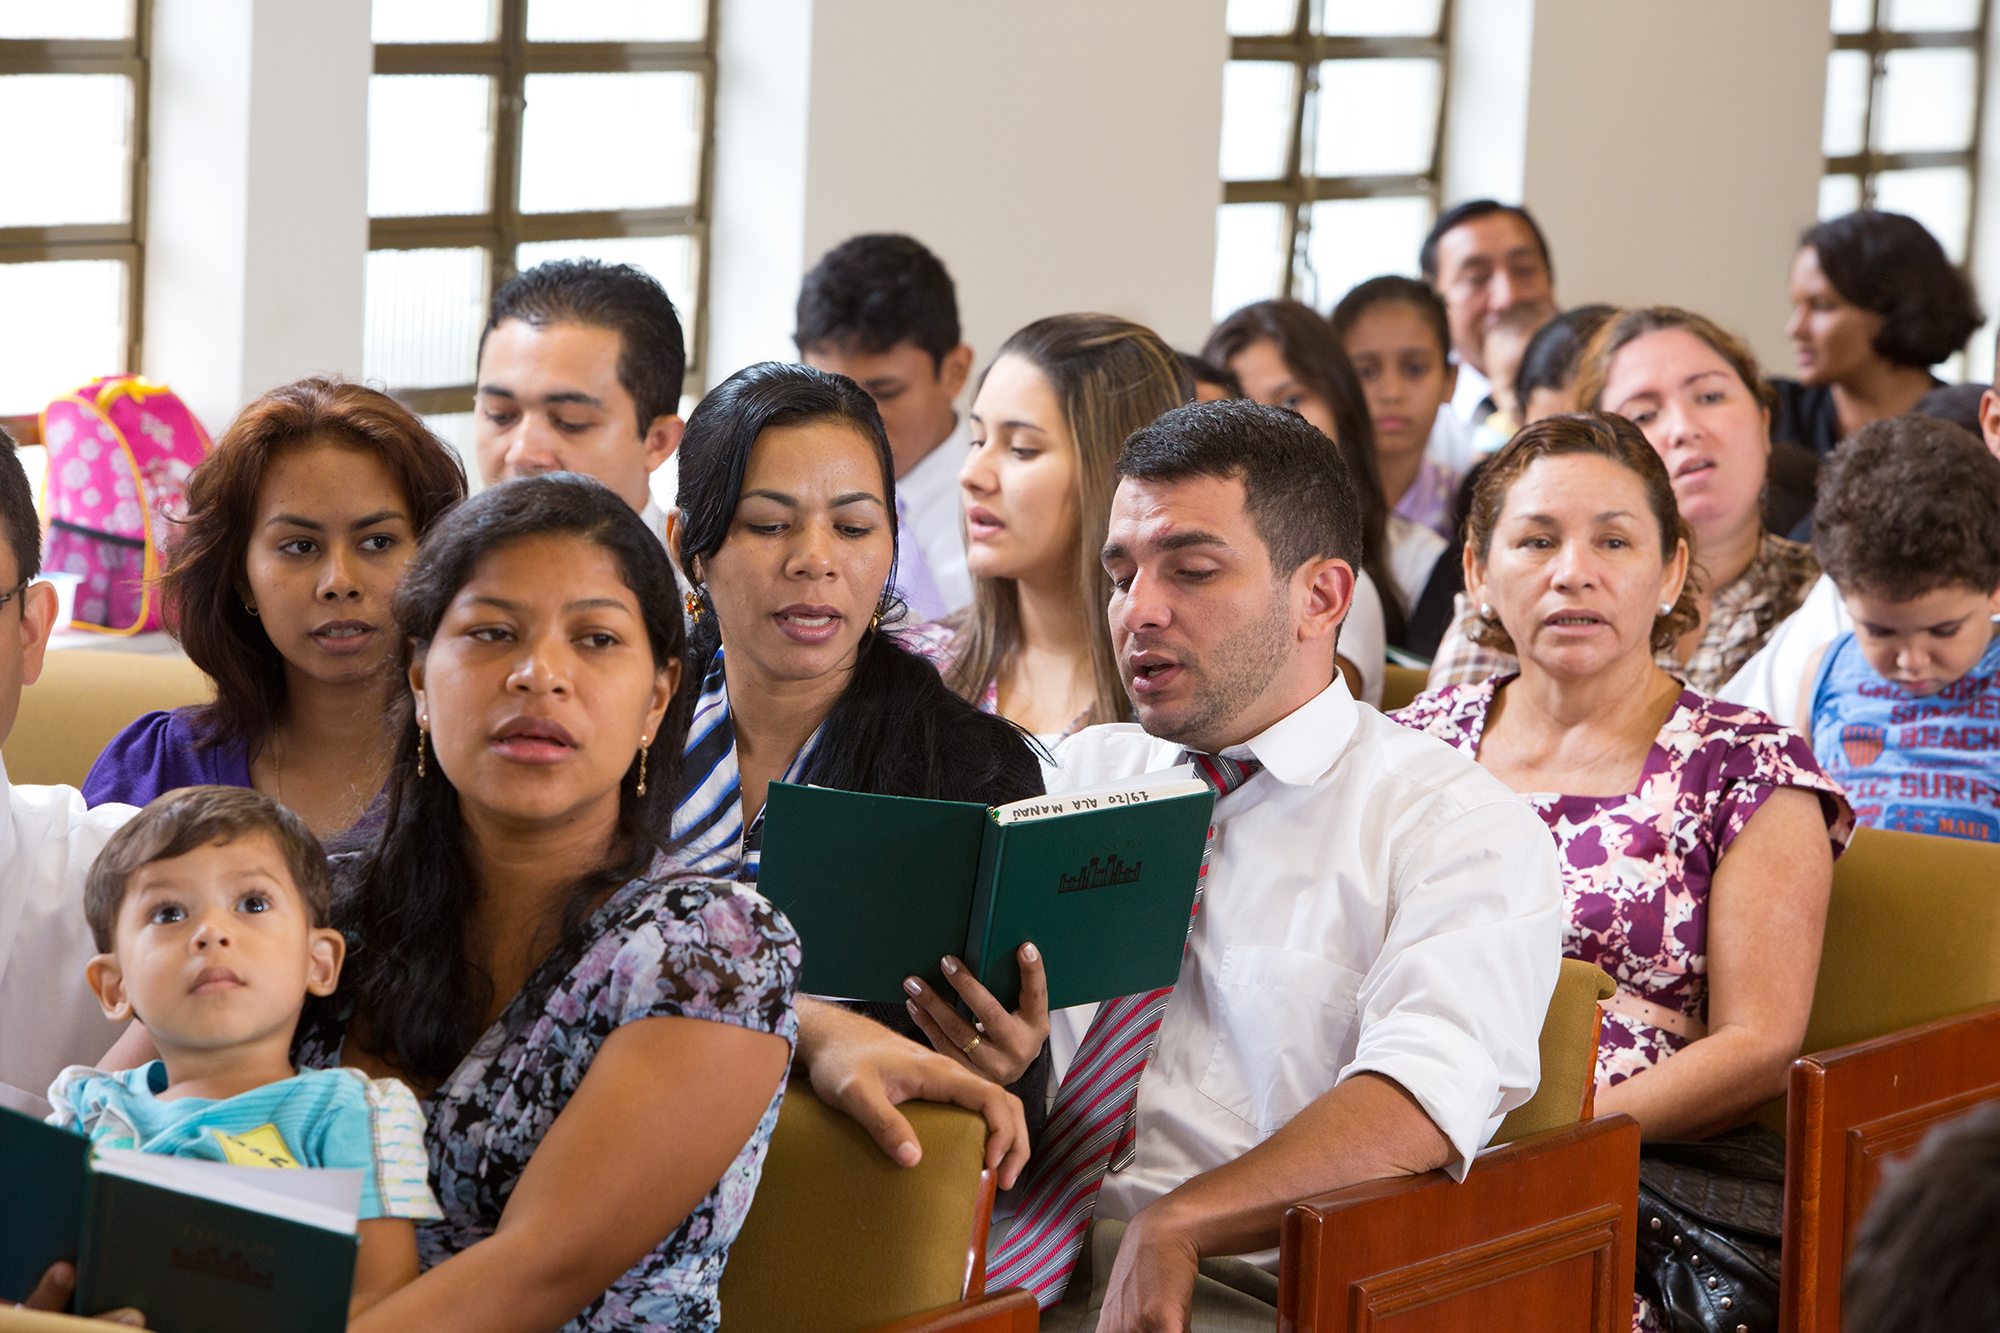 manaus brazil church meeting